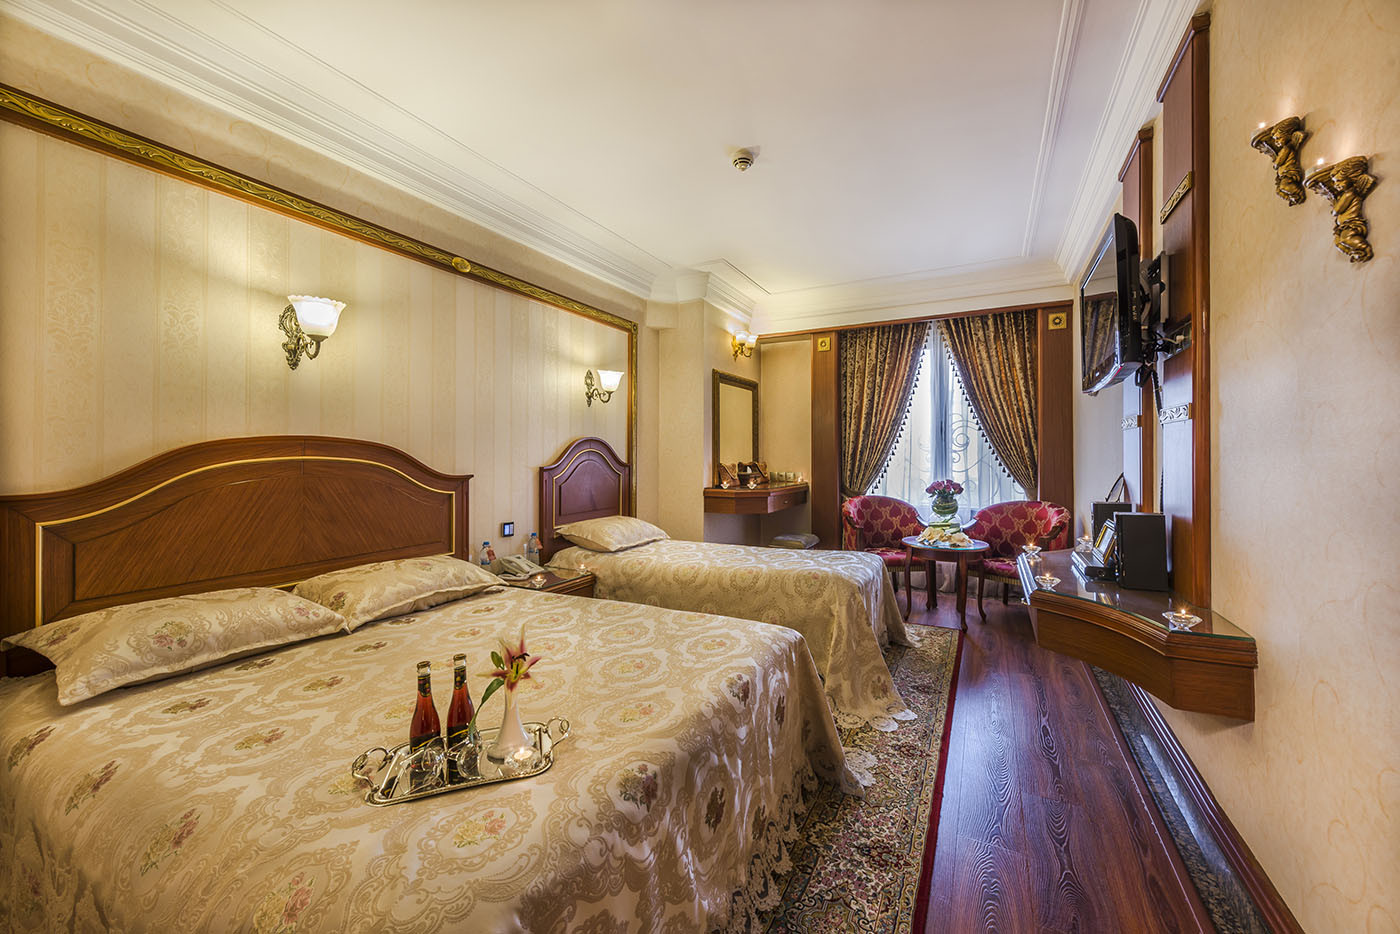 رزرو هتل قصر طلایی مشهد (پرزیدنت سوئیت)